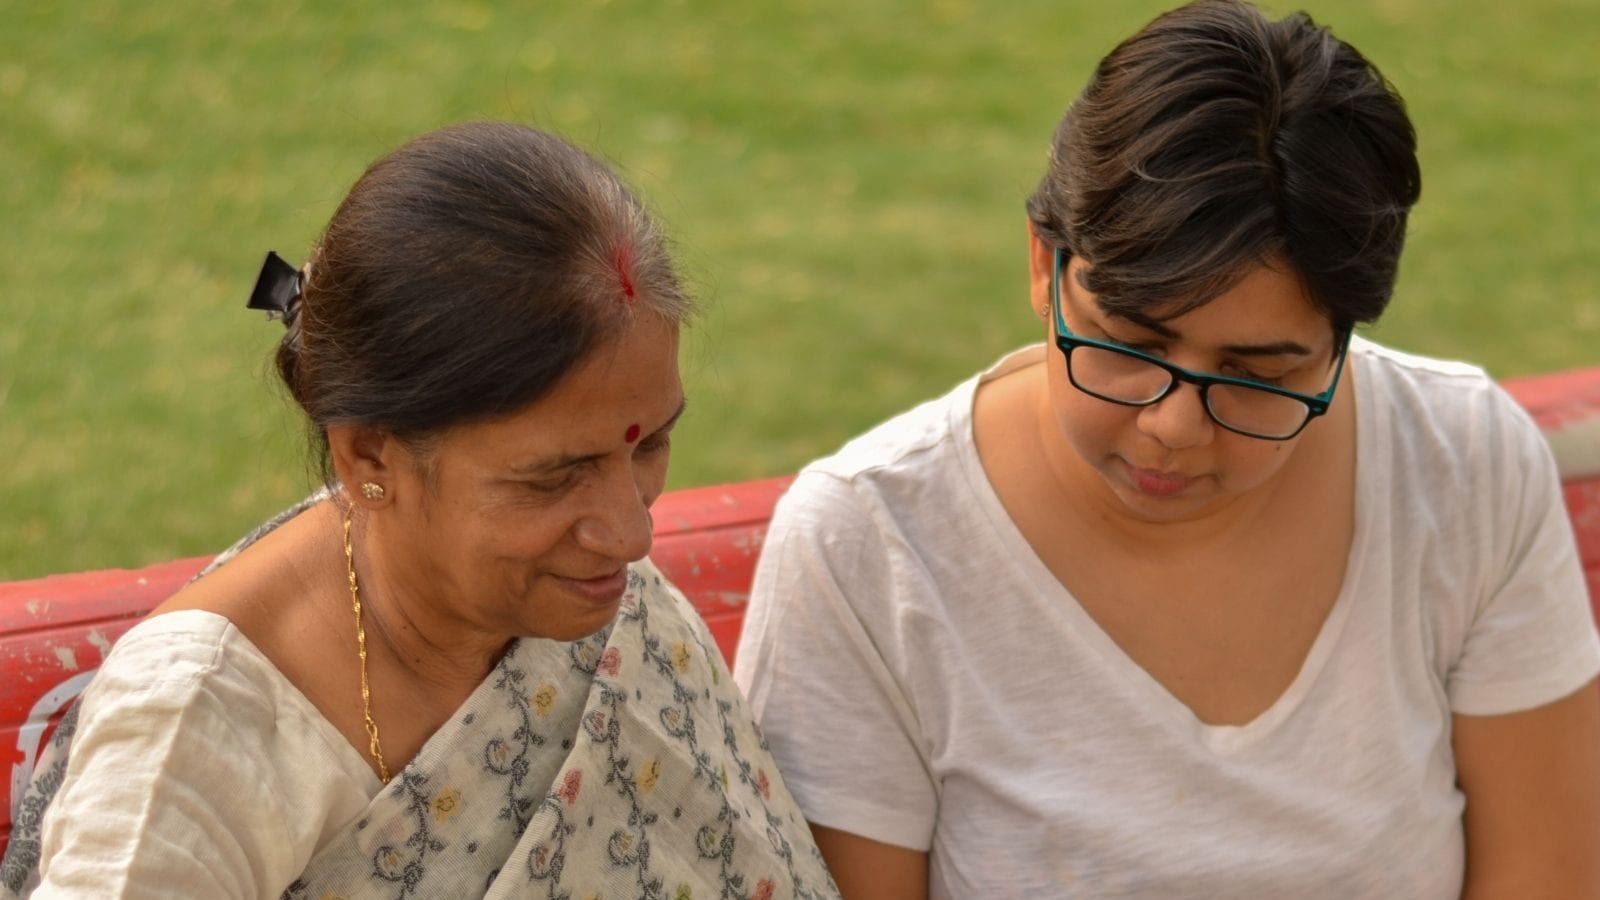 Ratan Tata invests in senior citizen companionship-as-service startup